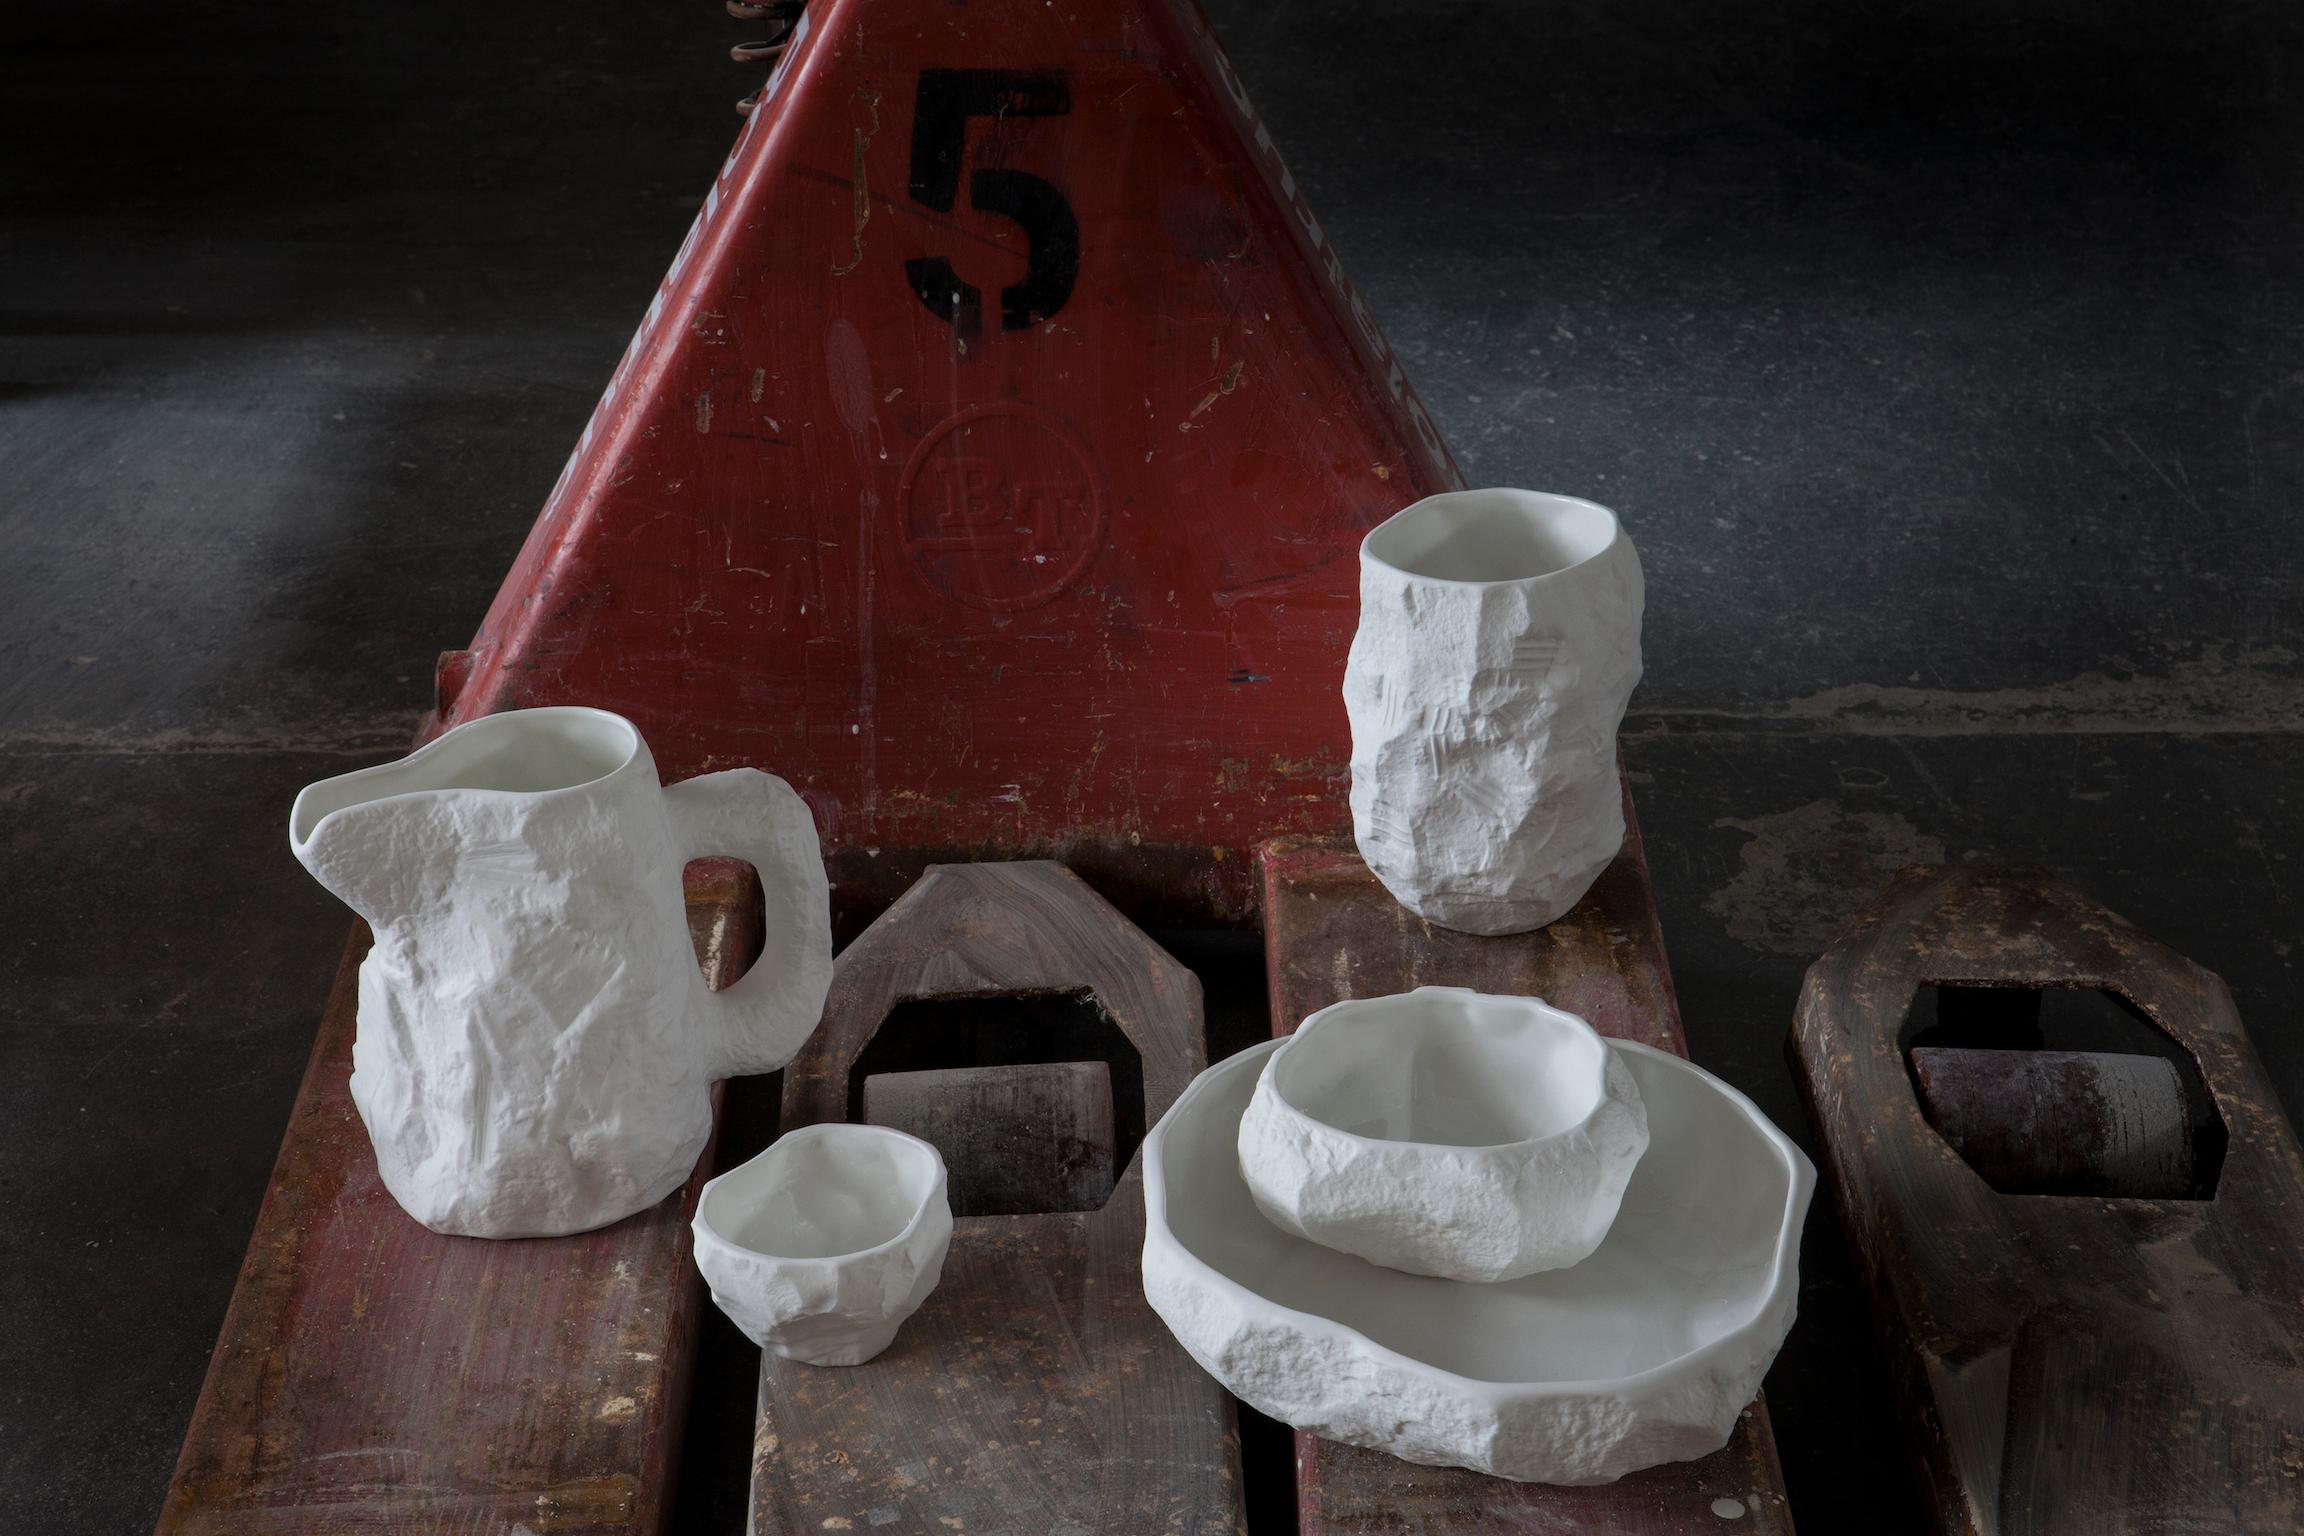 Crockery White, 1882 Ltd. avec Max Lamb. Une collection de vaisselle en fine porcelaine d'os moulée par glissement à partir de modèles en plâtre sculptés à la main, avec un intérieur émaillé pour la fonctionnalité et un extérieur brut reflétant la